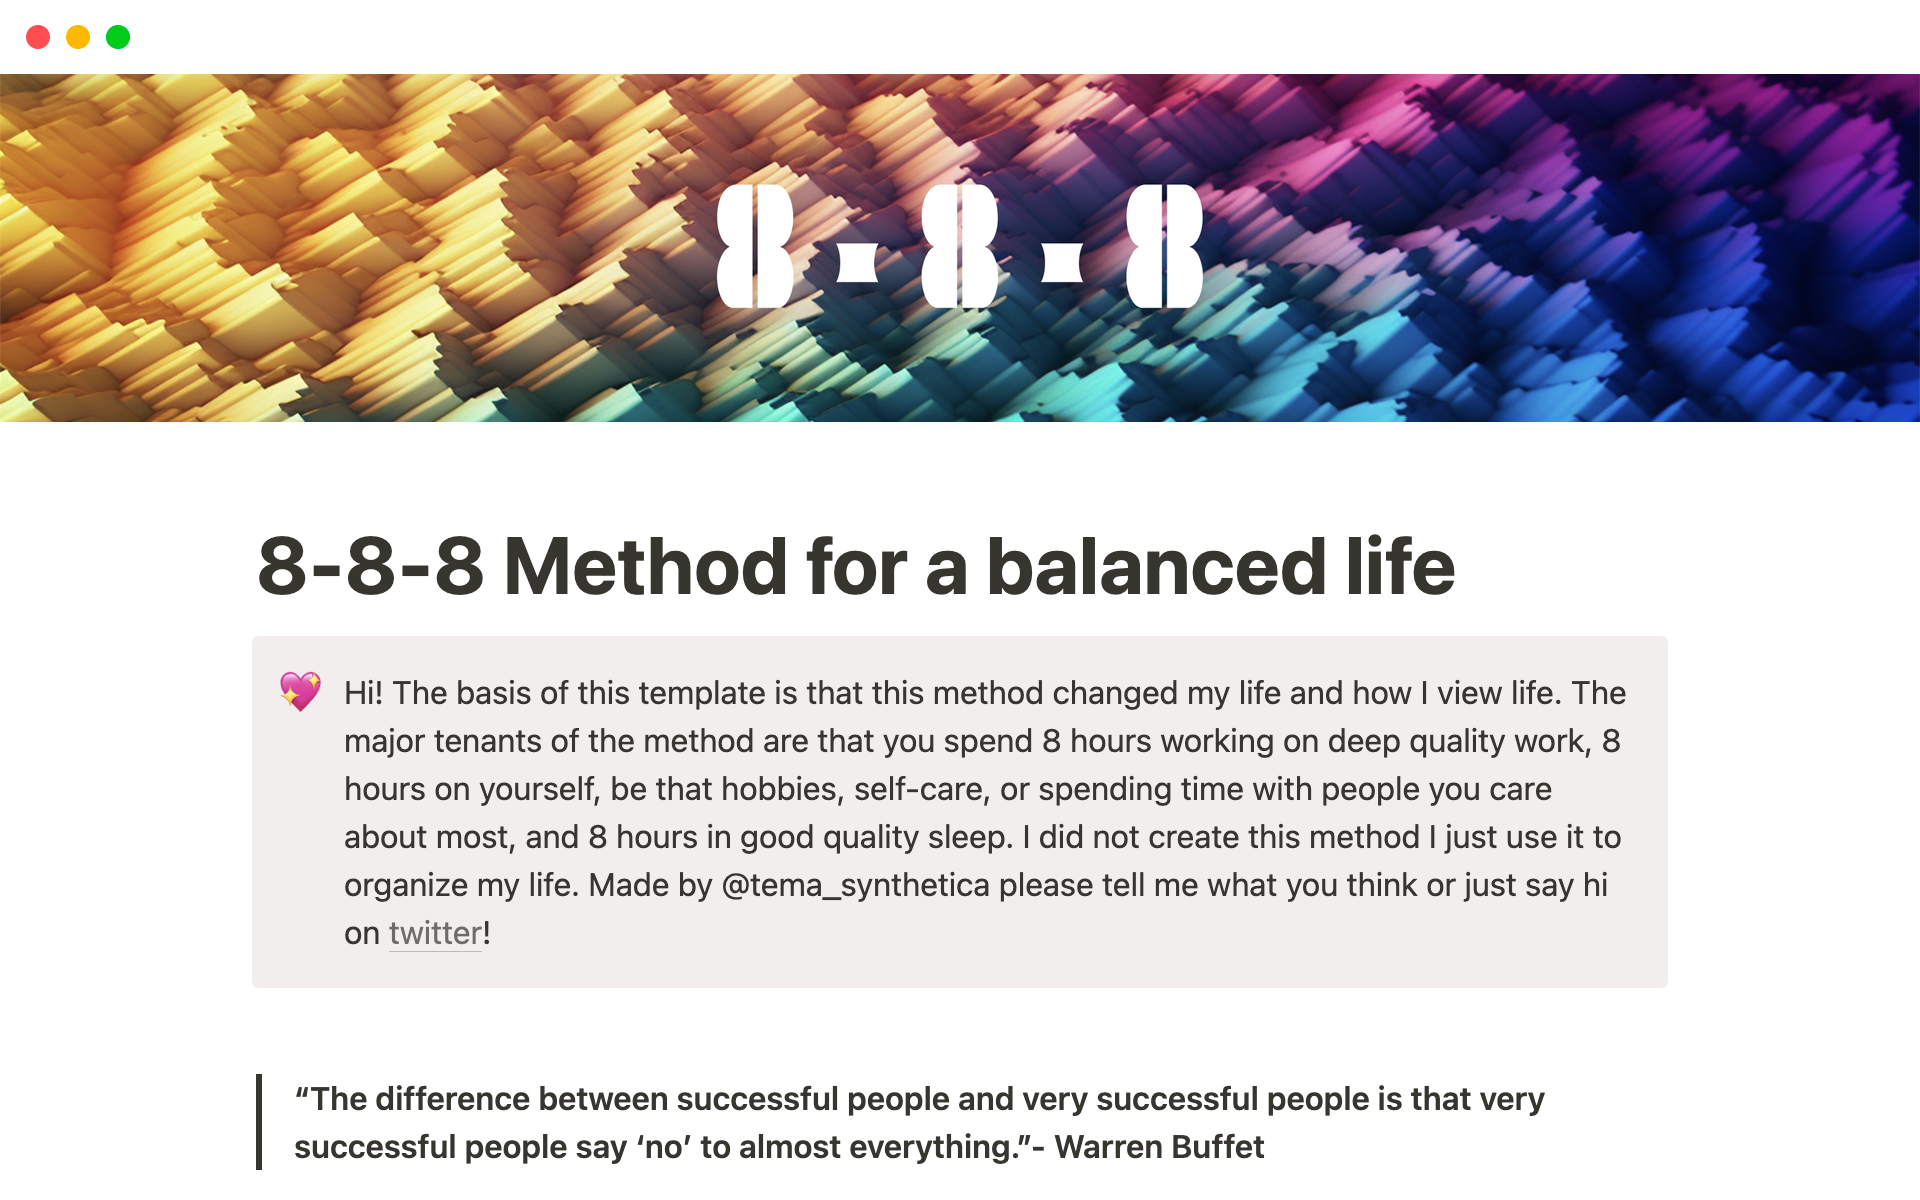 Uma prévia do modelo para 8-8-8 Method for a balanced life